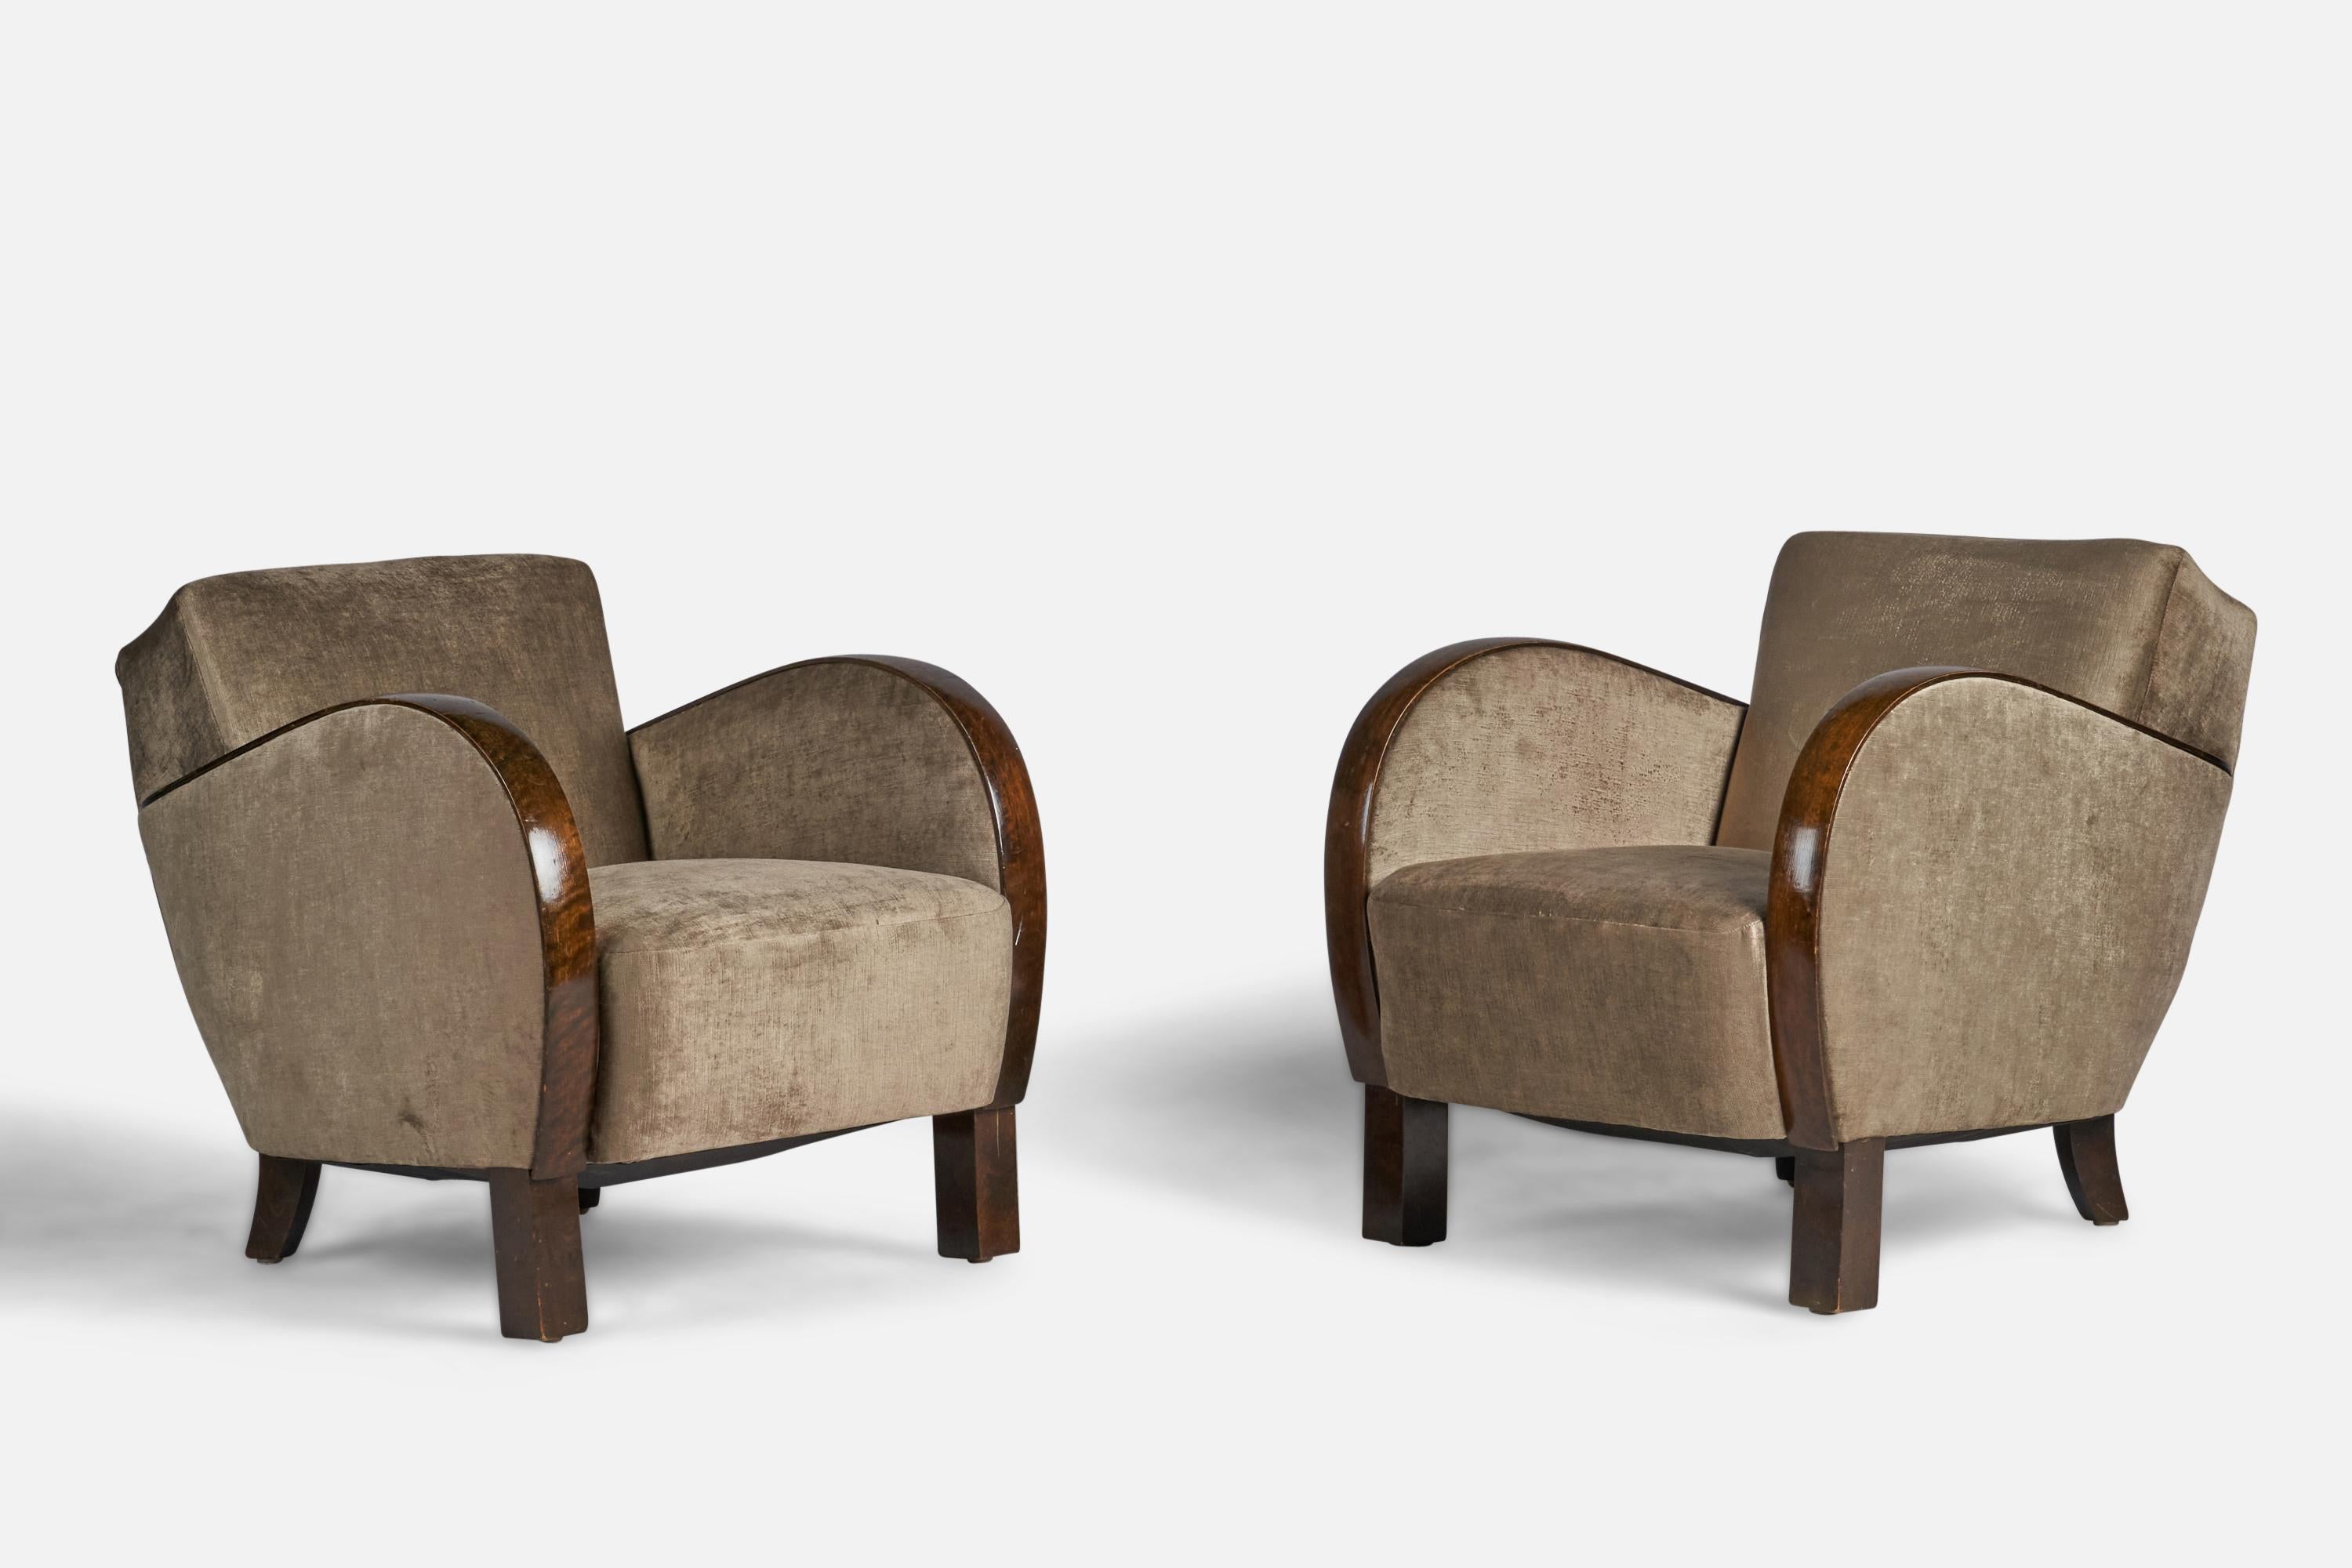 Ein Paar Sessel aus gebeizter Birke und grauem Samt, entworfen und hergestellt in Schweden, 1930er Jahre.

16,5